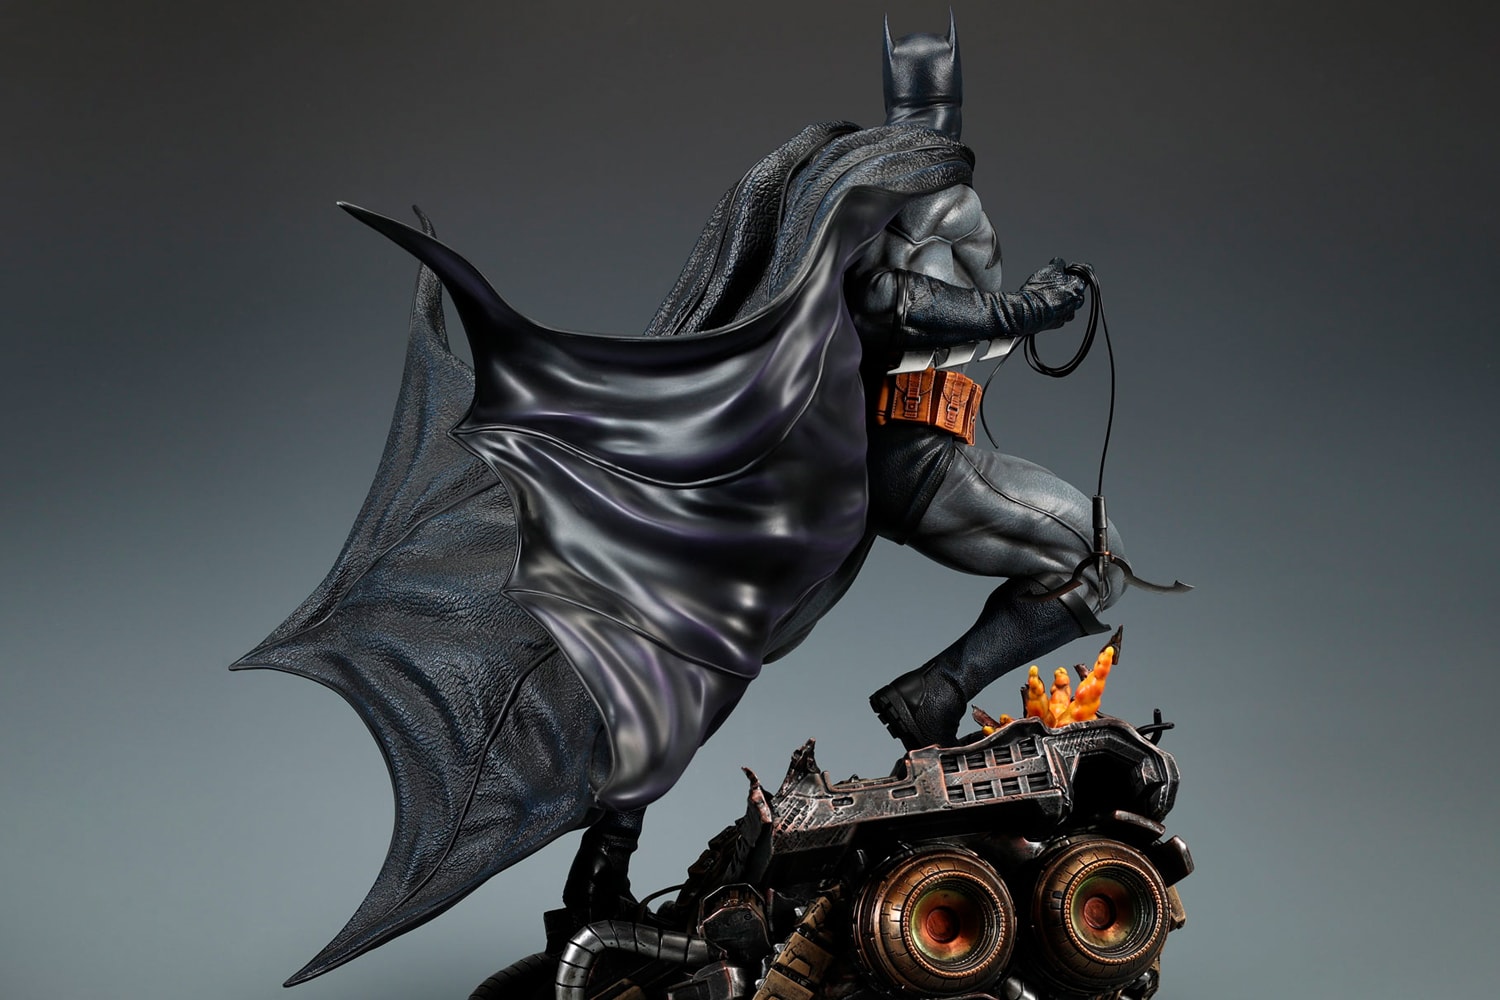 Premium Classic Batman Mens Costume